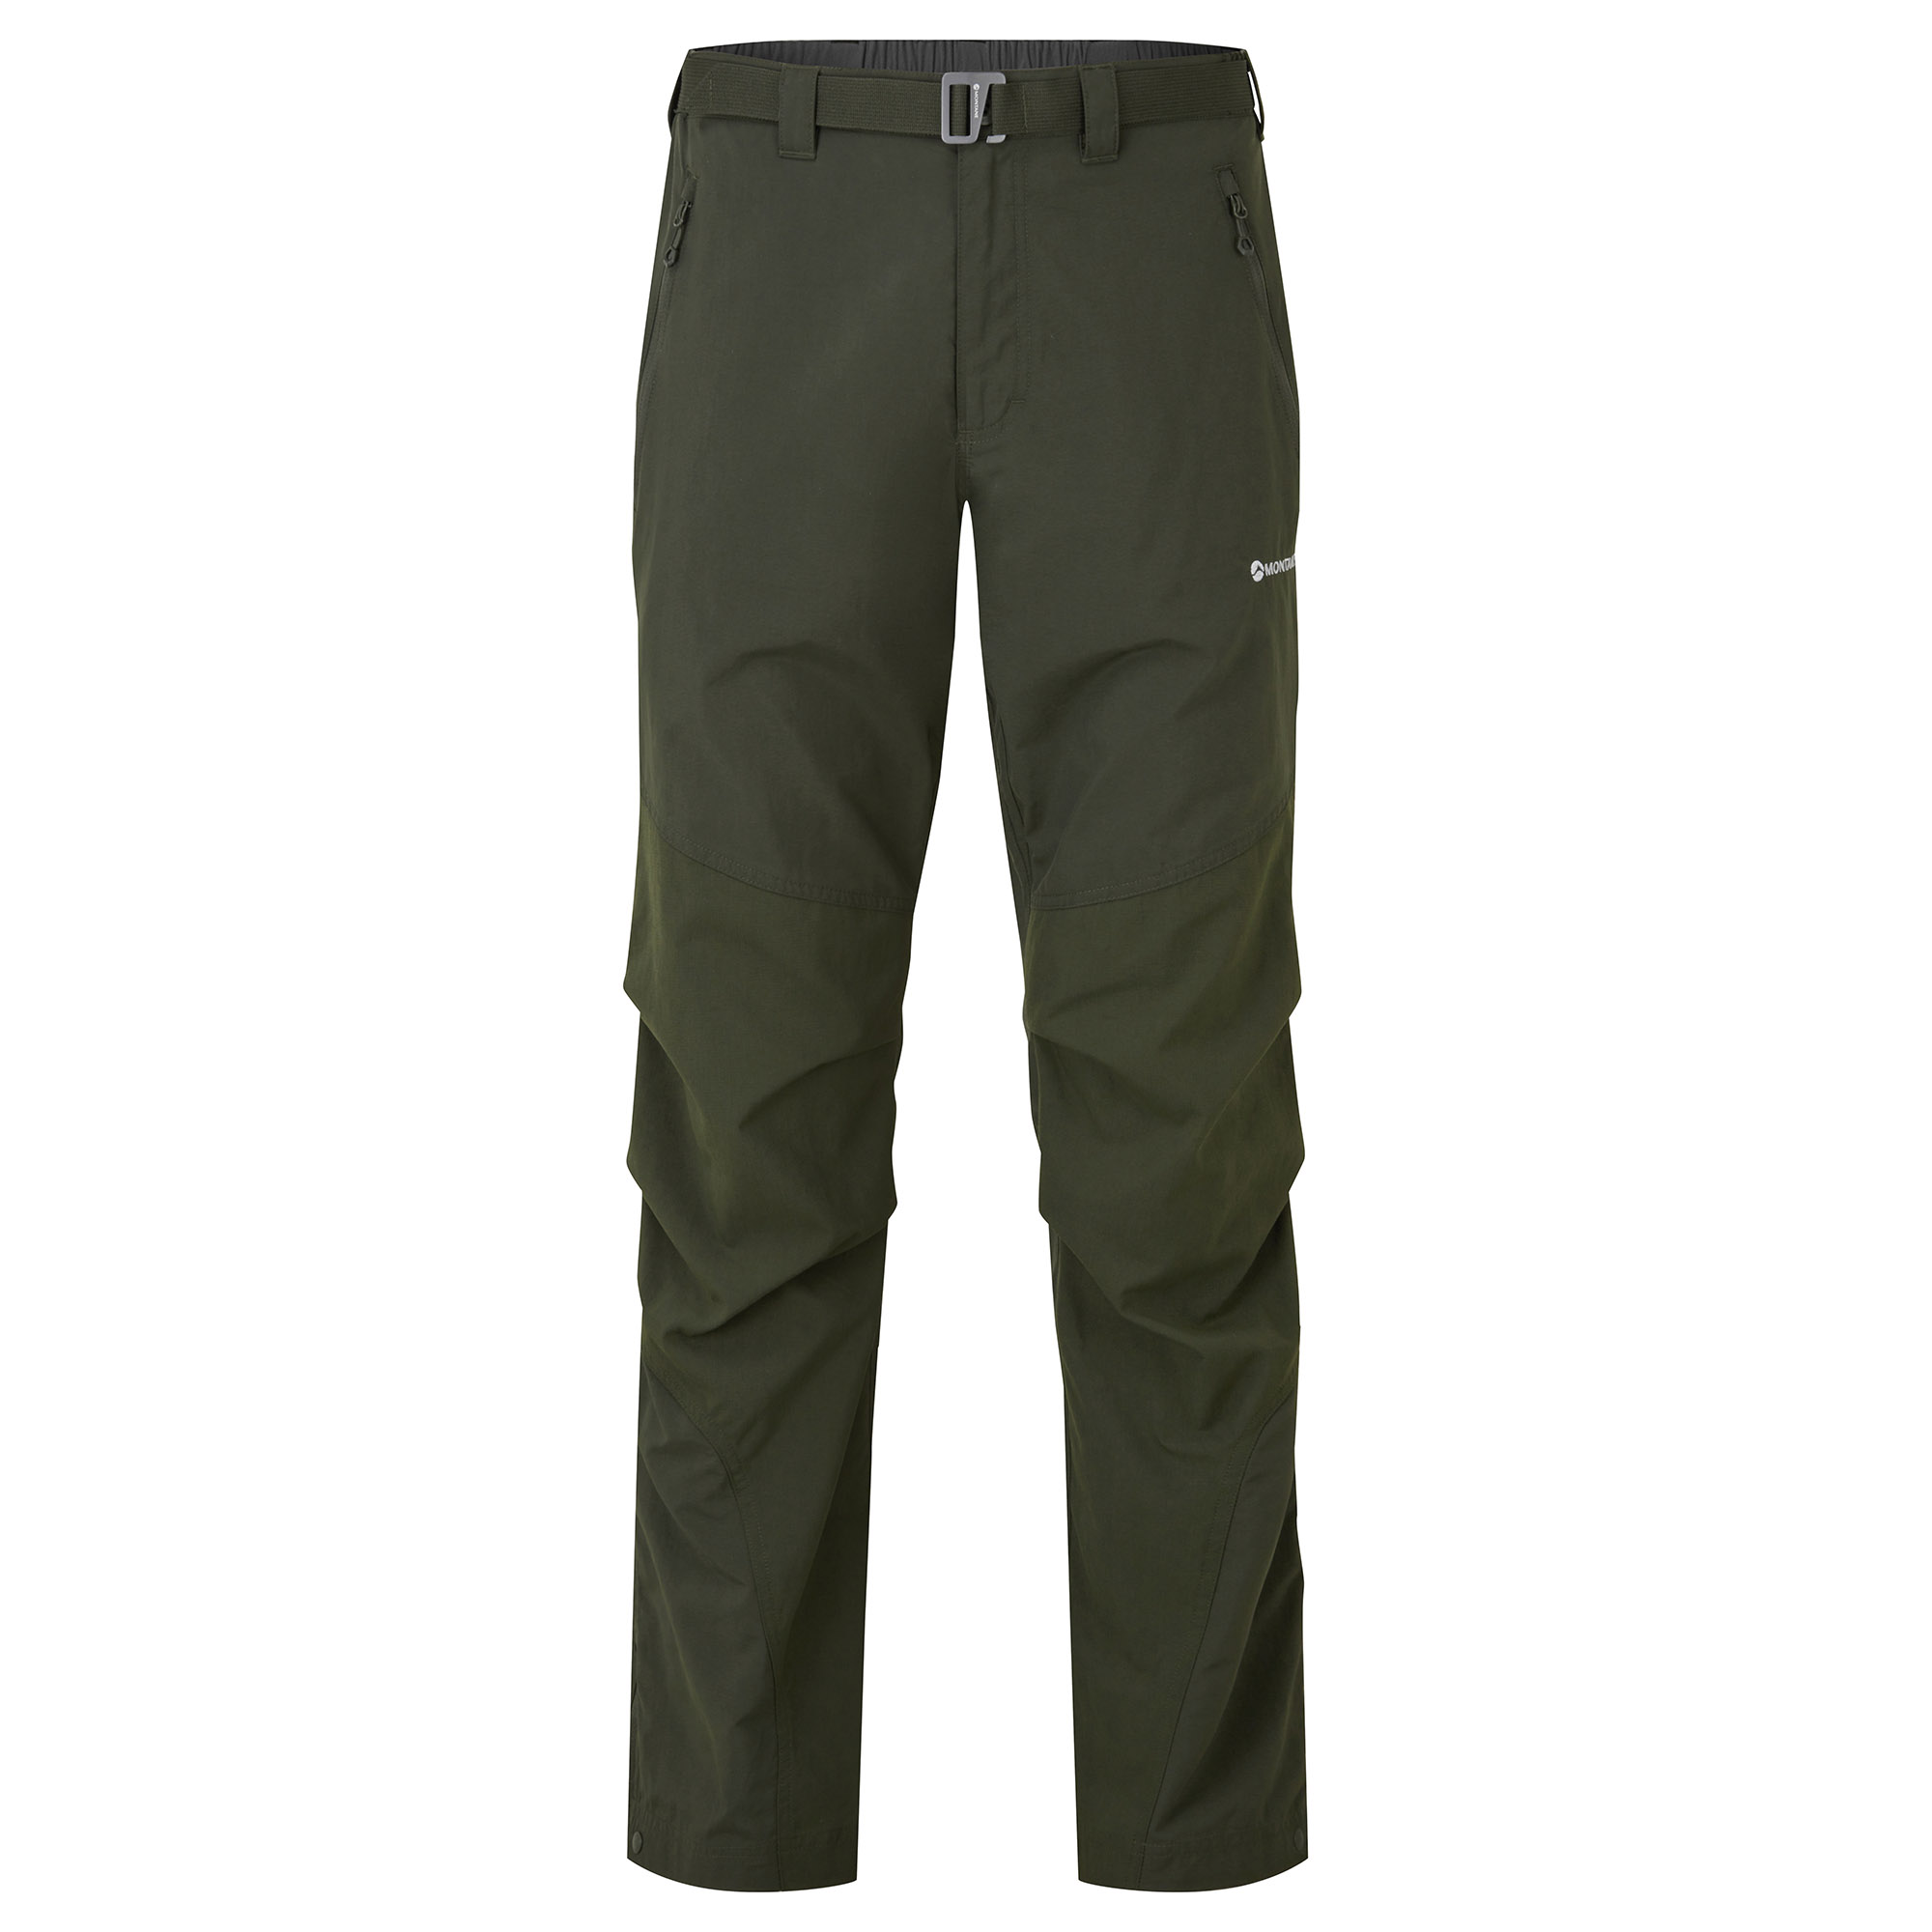 Montane pánské softshellové kalhoty Terra Pants - Zkrácené Nohavice Barva: Oak Green, Velikost: 34